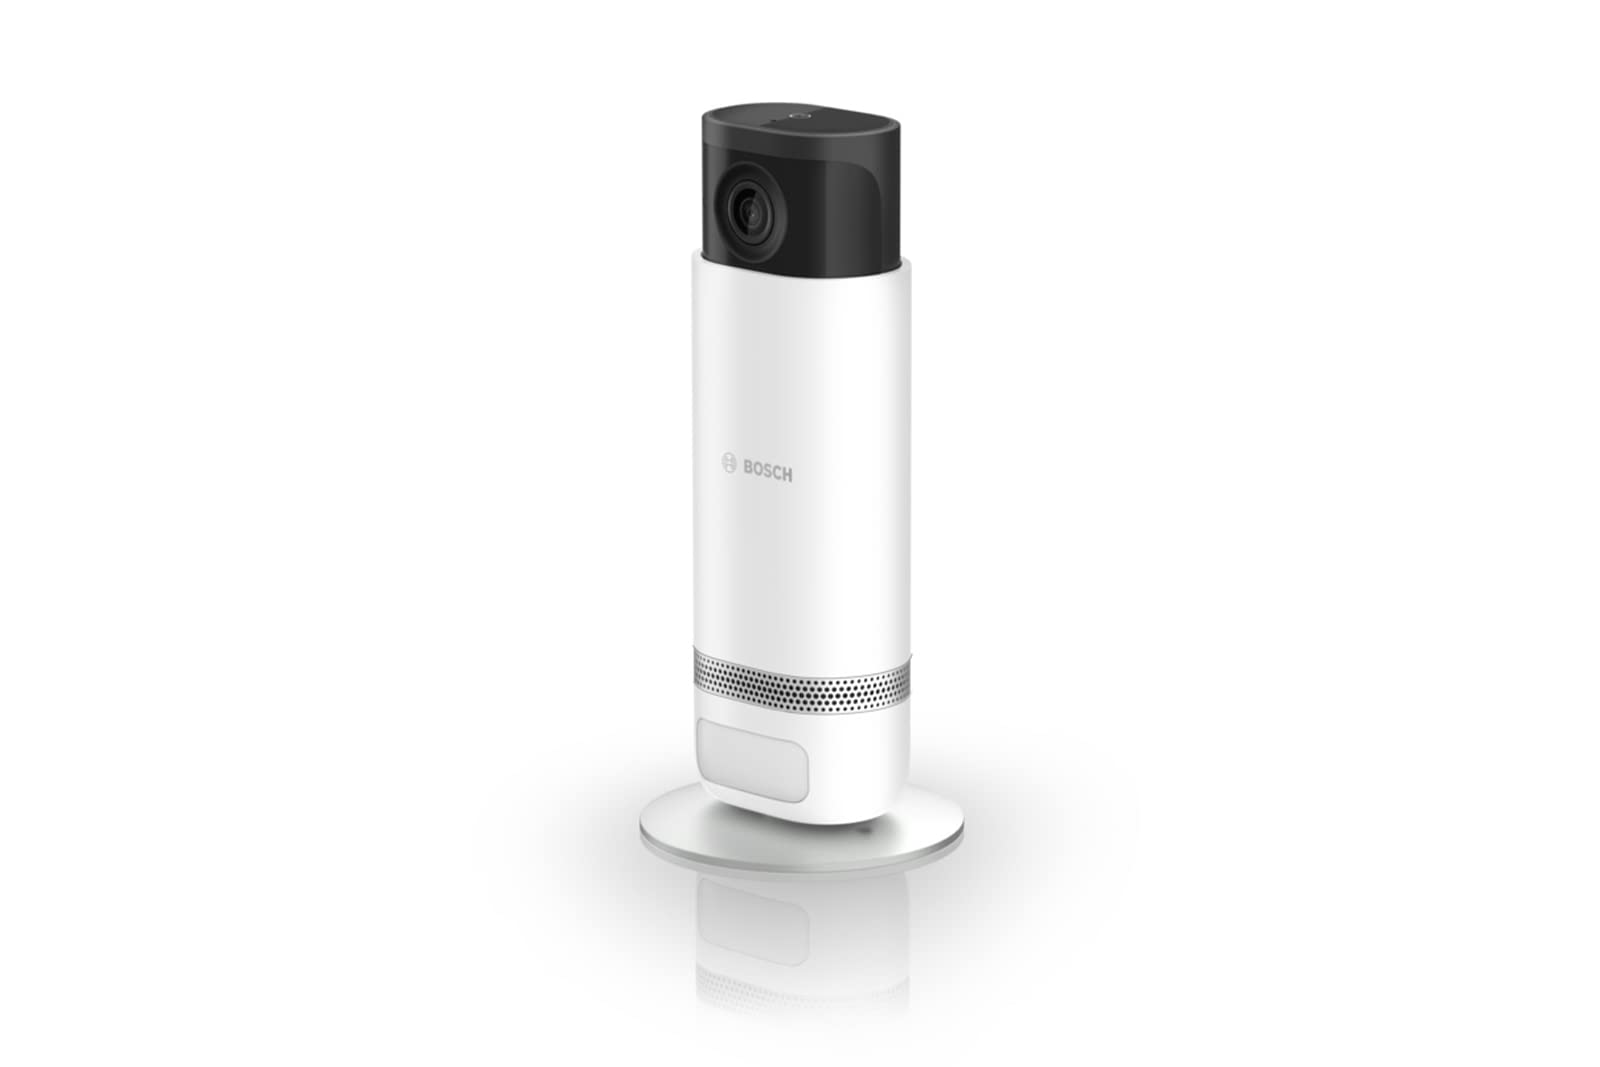 Bosch Smart Home Eyes Innenkamera II, 1080p WLAN Überwachungskamera für den Innenbereich, kompatibel mit Amazon Alexa, Nur Bewegung